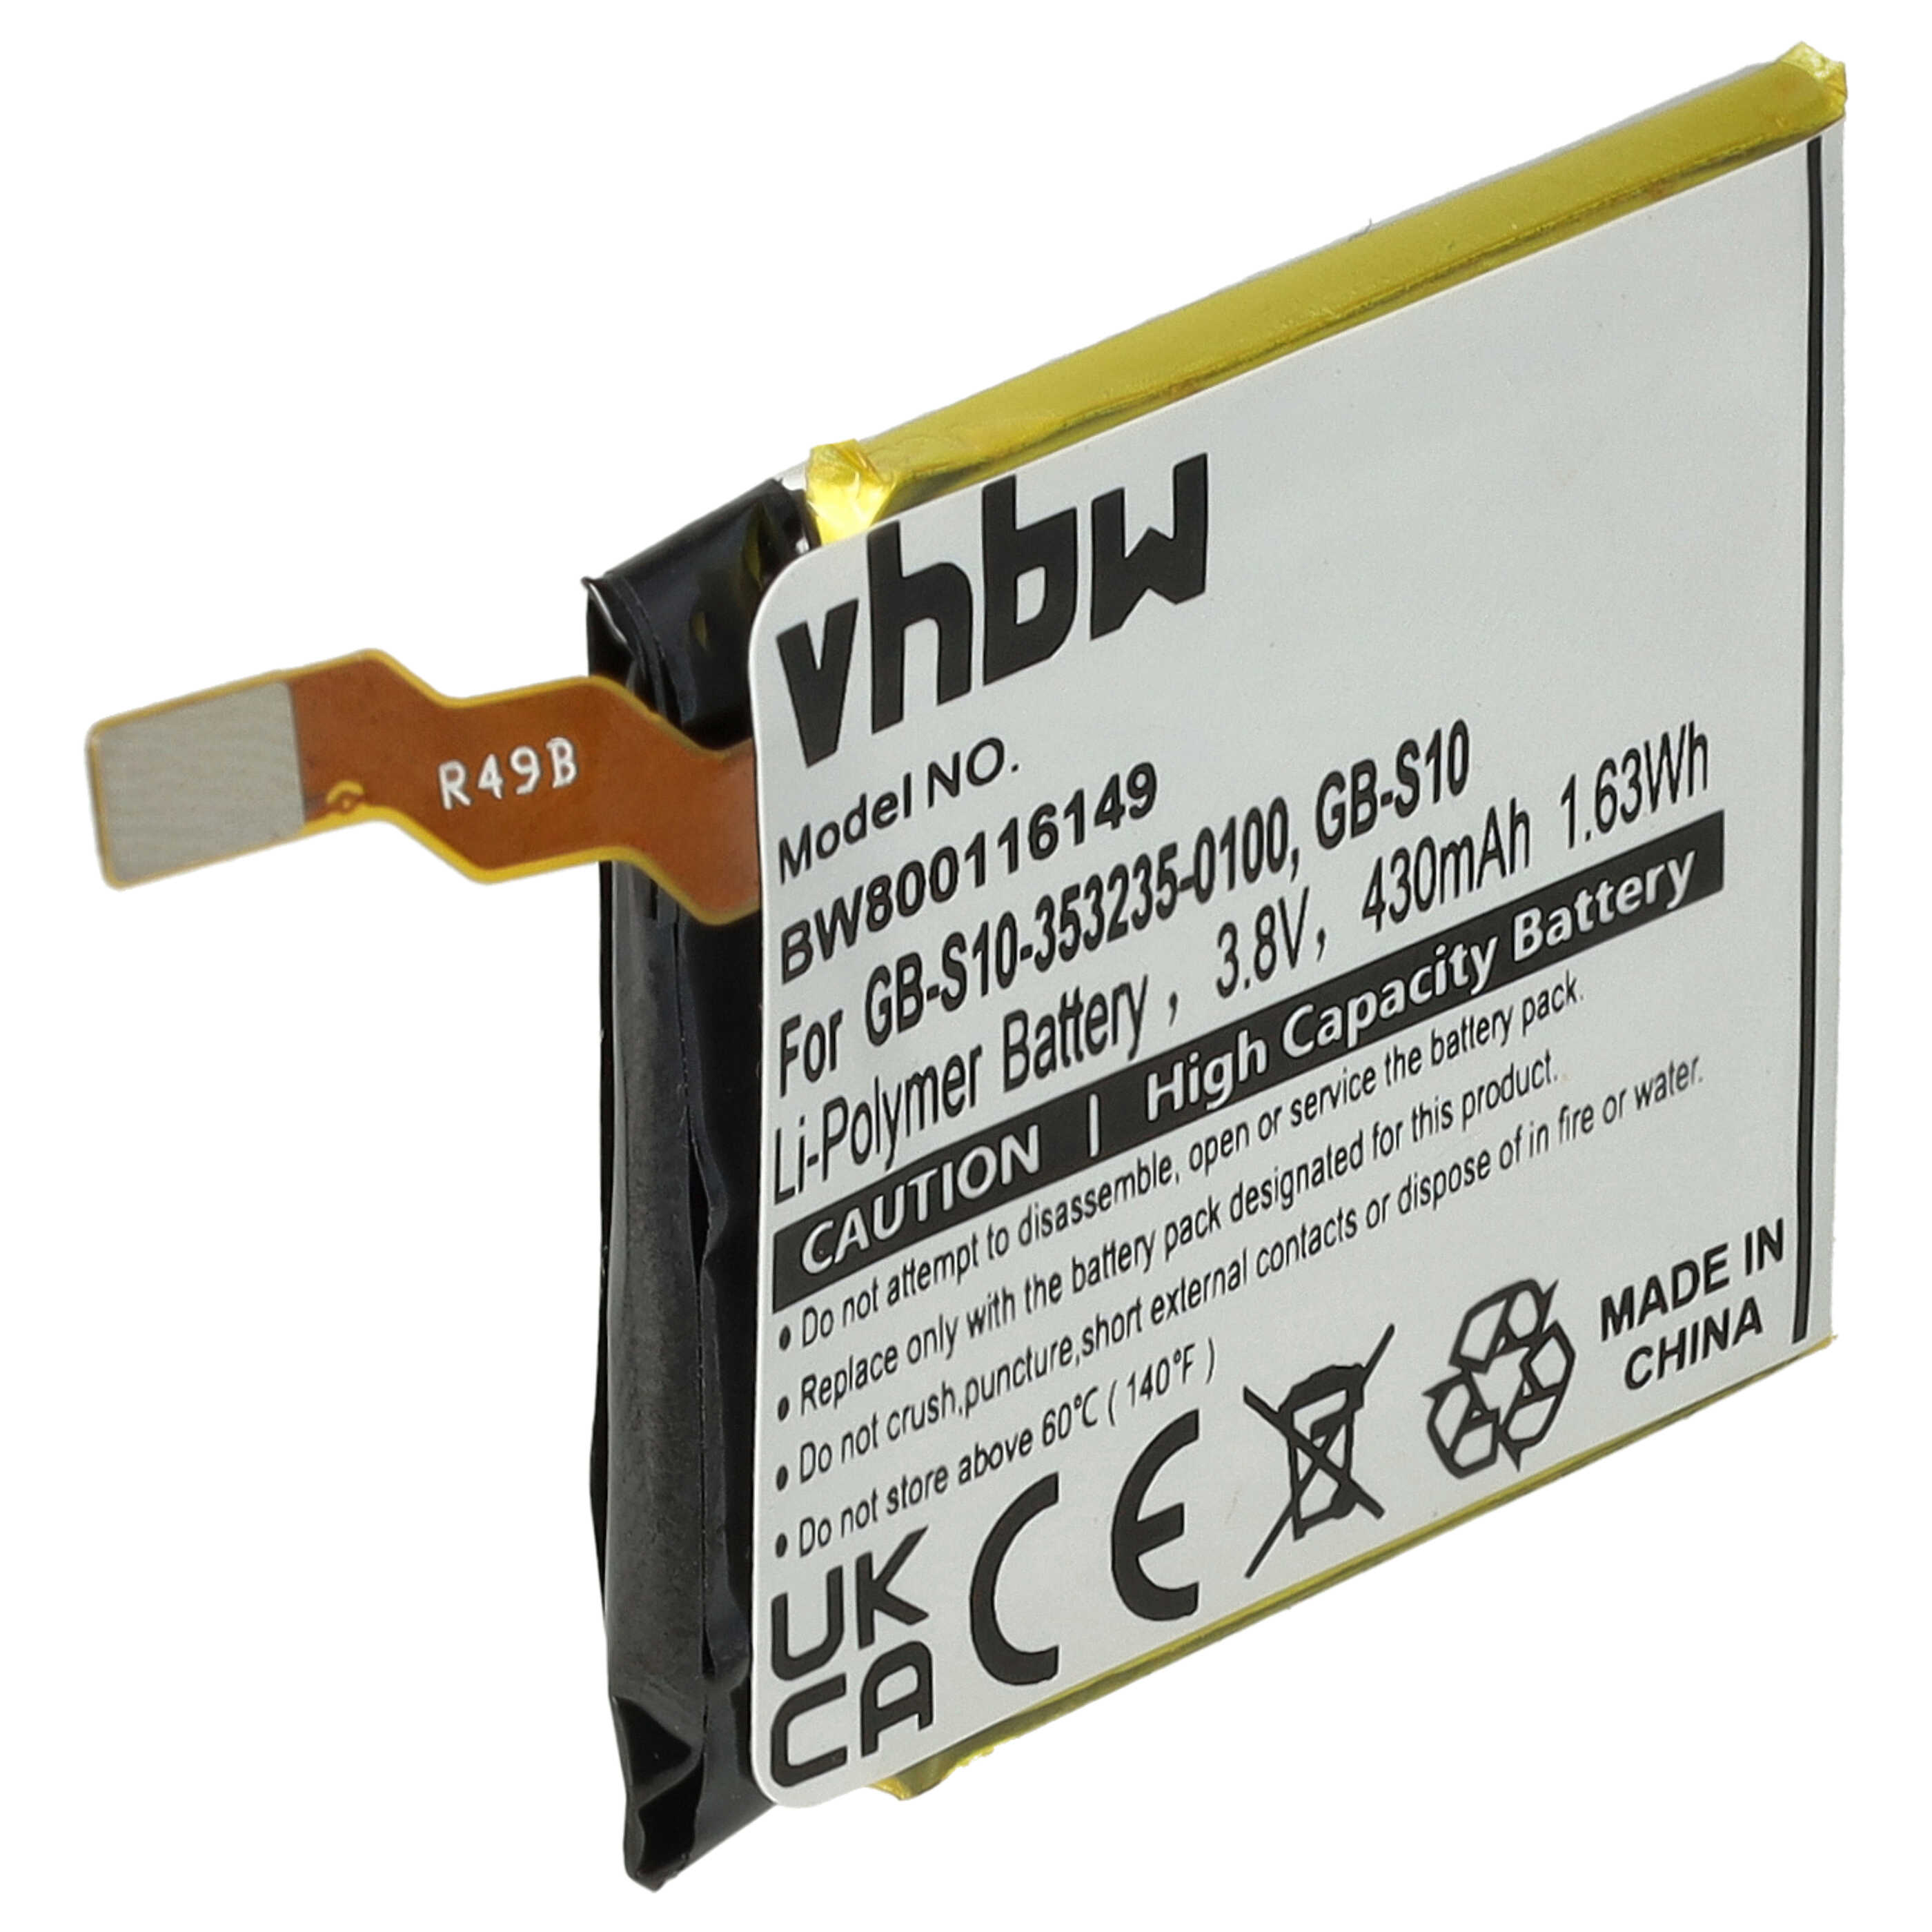 Batterie remplace Sony 1288-9079, GB-S10, 1588-0911 pour montre connectée - 430mAh 3,7V Li-polymère